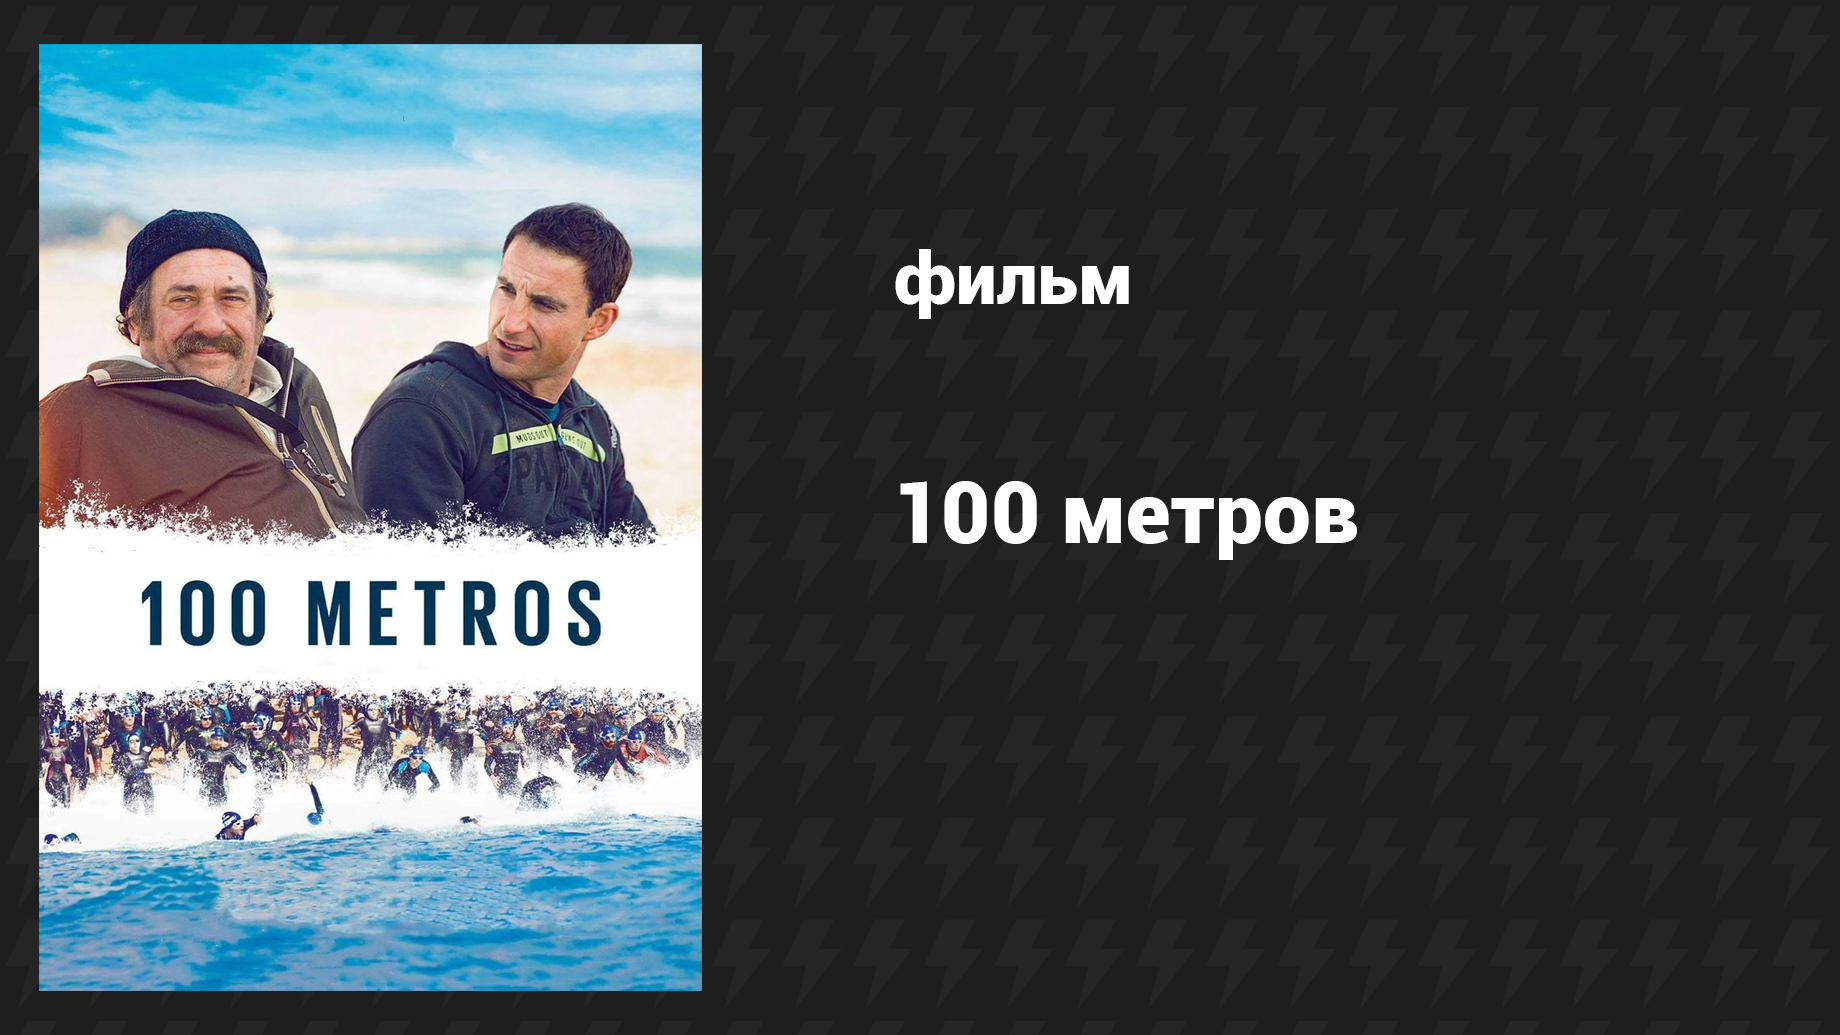 100 метров (фильм, 2016)